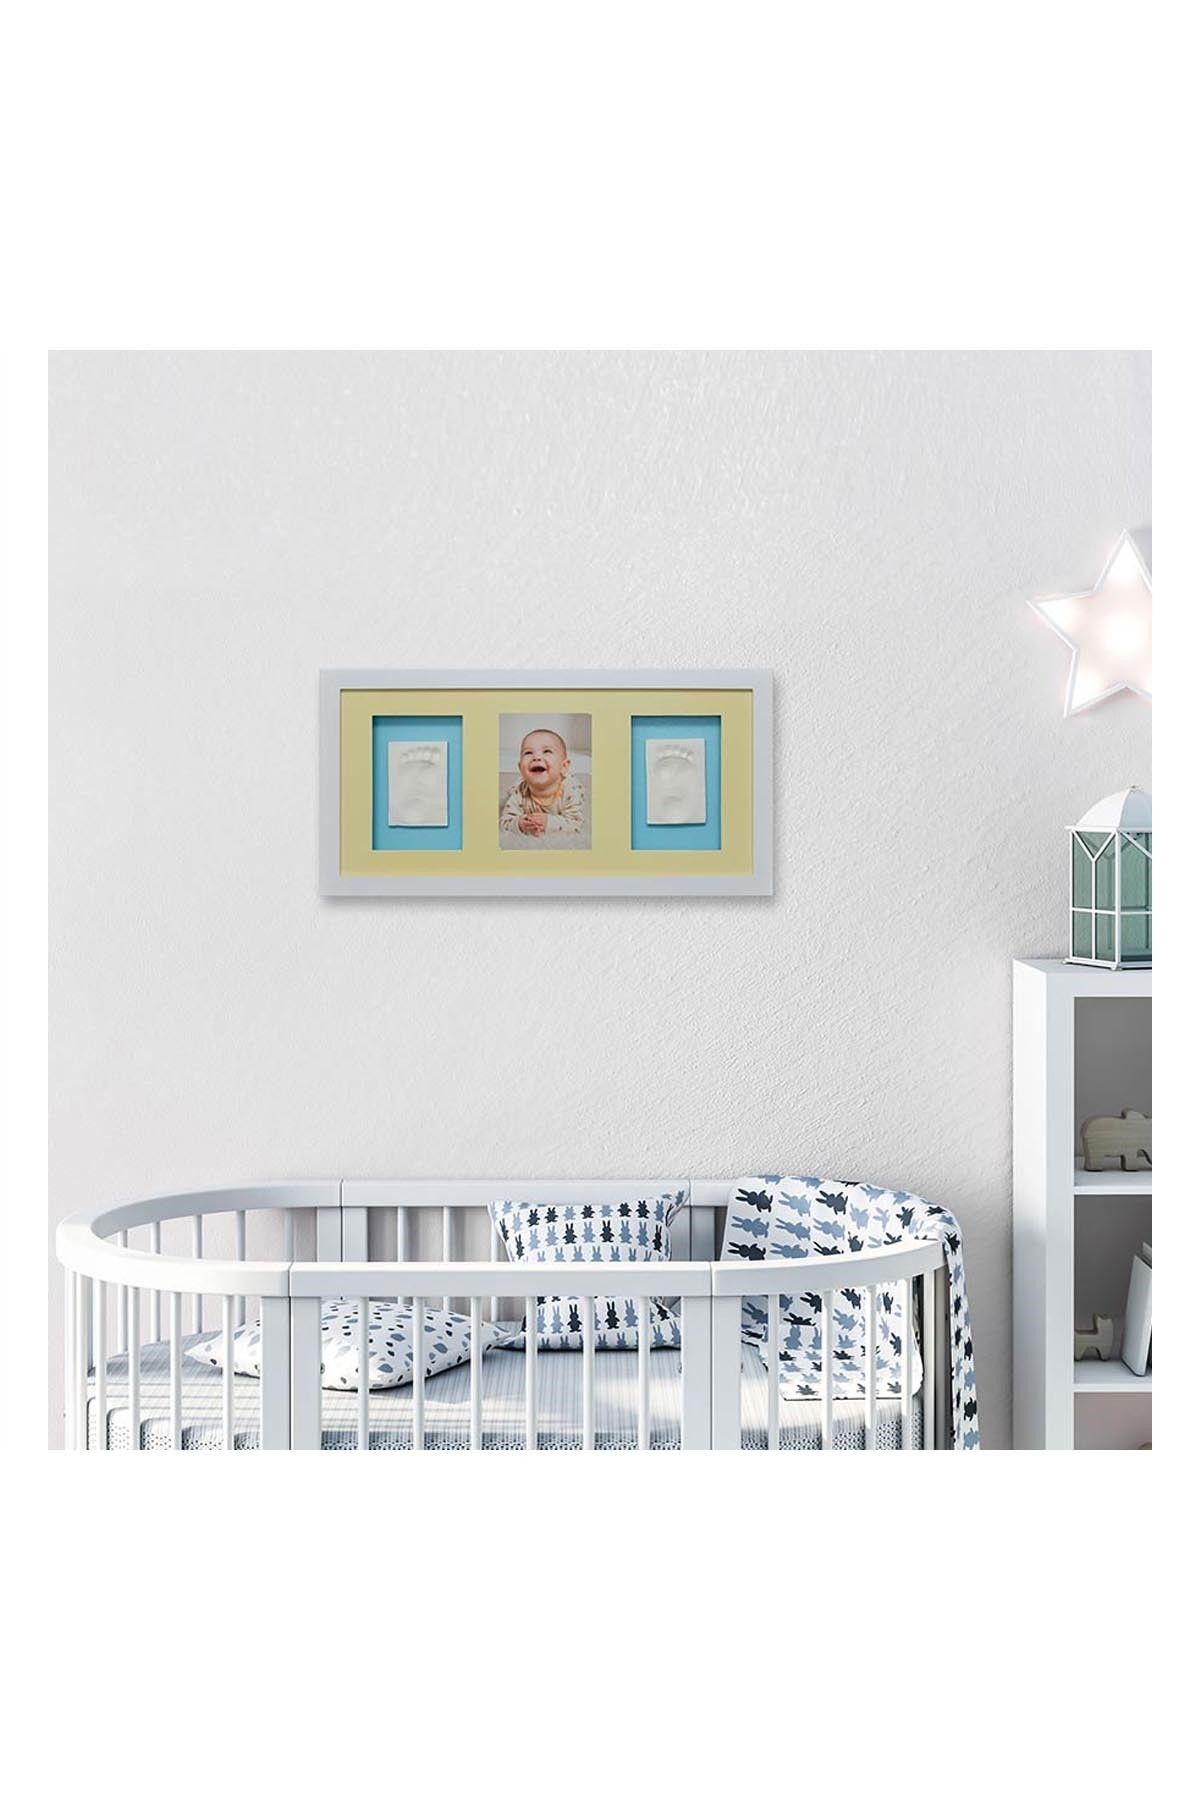 Baby Memory Prints Üçlü Çerçeve Frame Beyaz